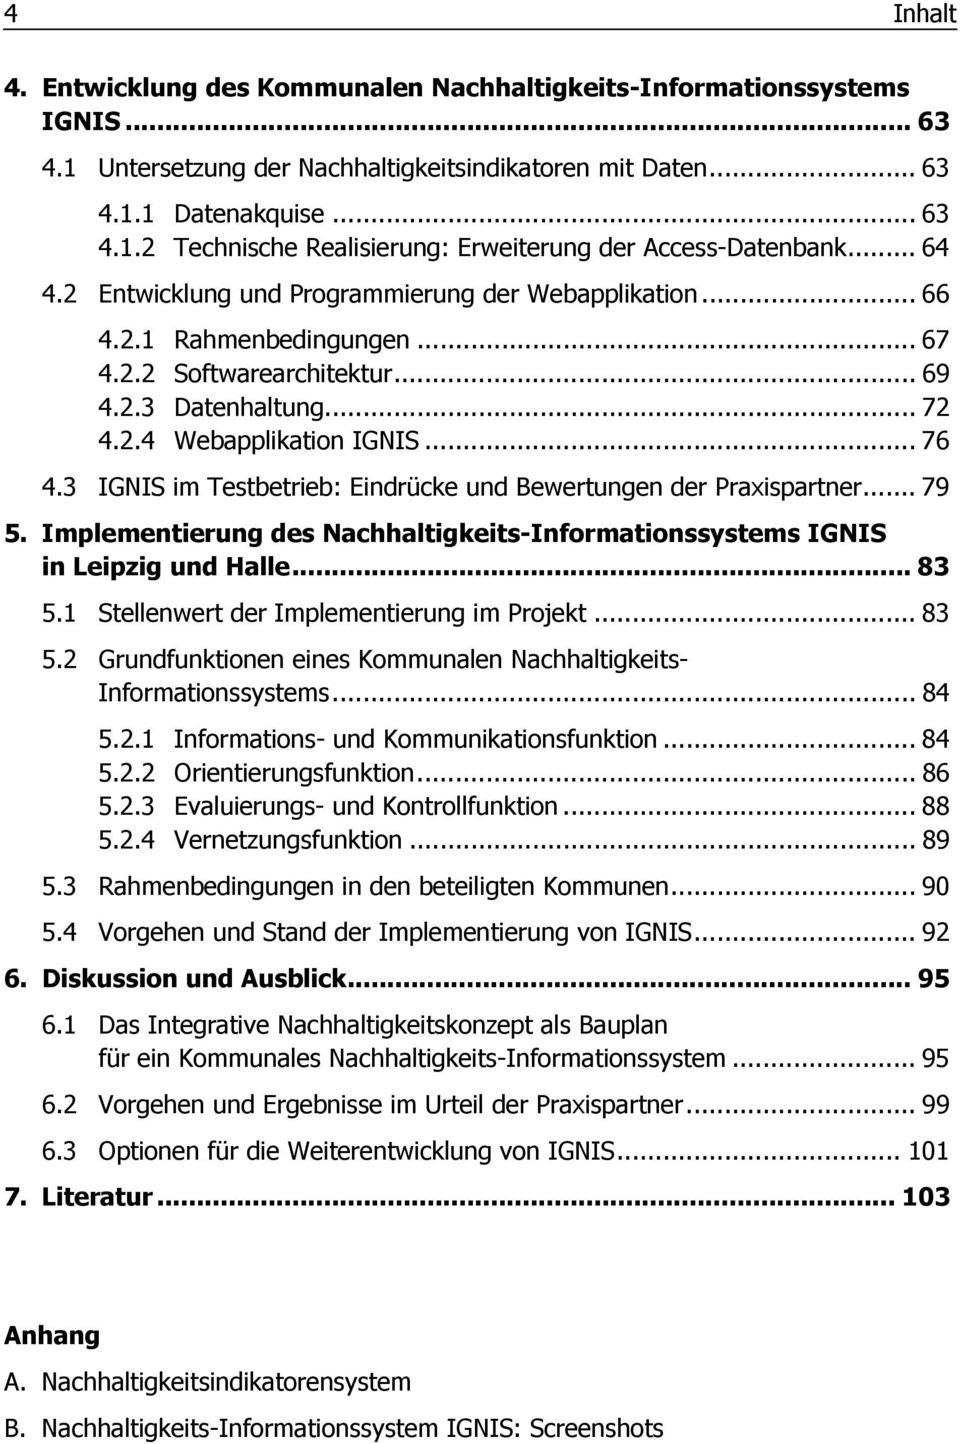 3 IGNIS im Testbetrieb: Eindrücke und Bewertungen der Praxispartner... 79 5. Implementierung des Nachhaltigkeits-Informationssystems IGNIS in Leipzig und Halle... 83 5.